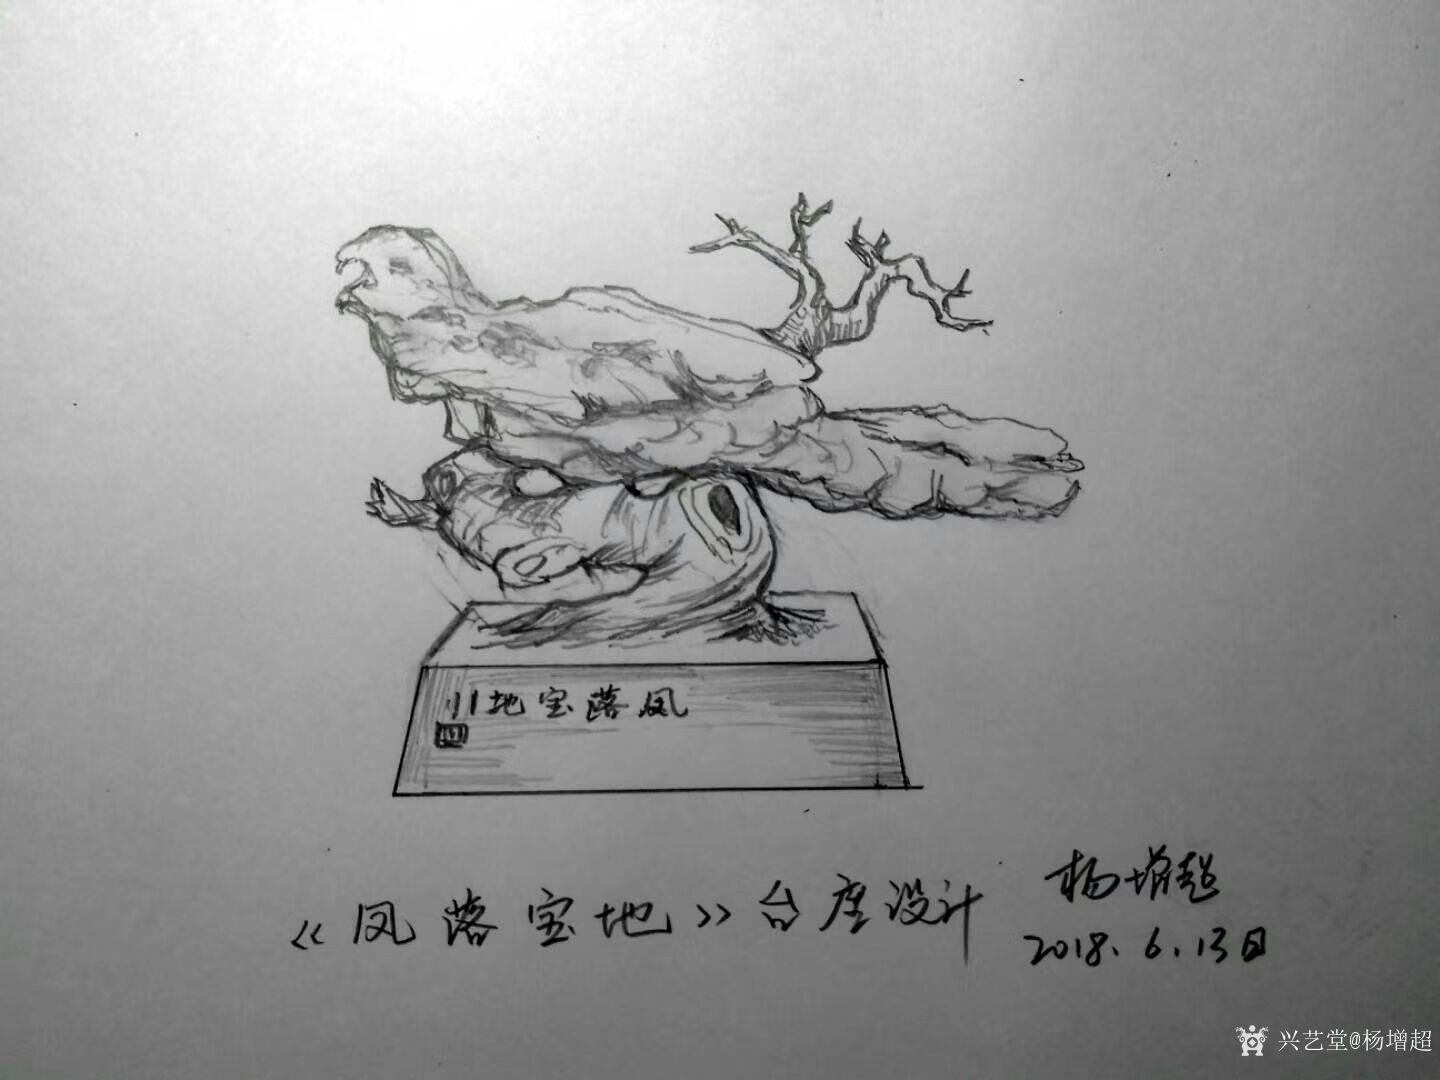 杨增超日志:奇石瓷画艺术作品《秋山叶红》